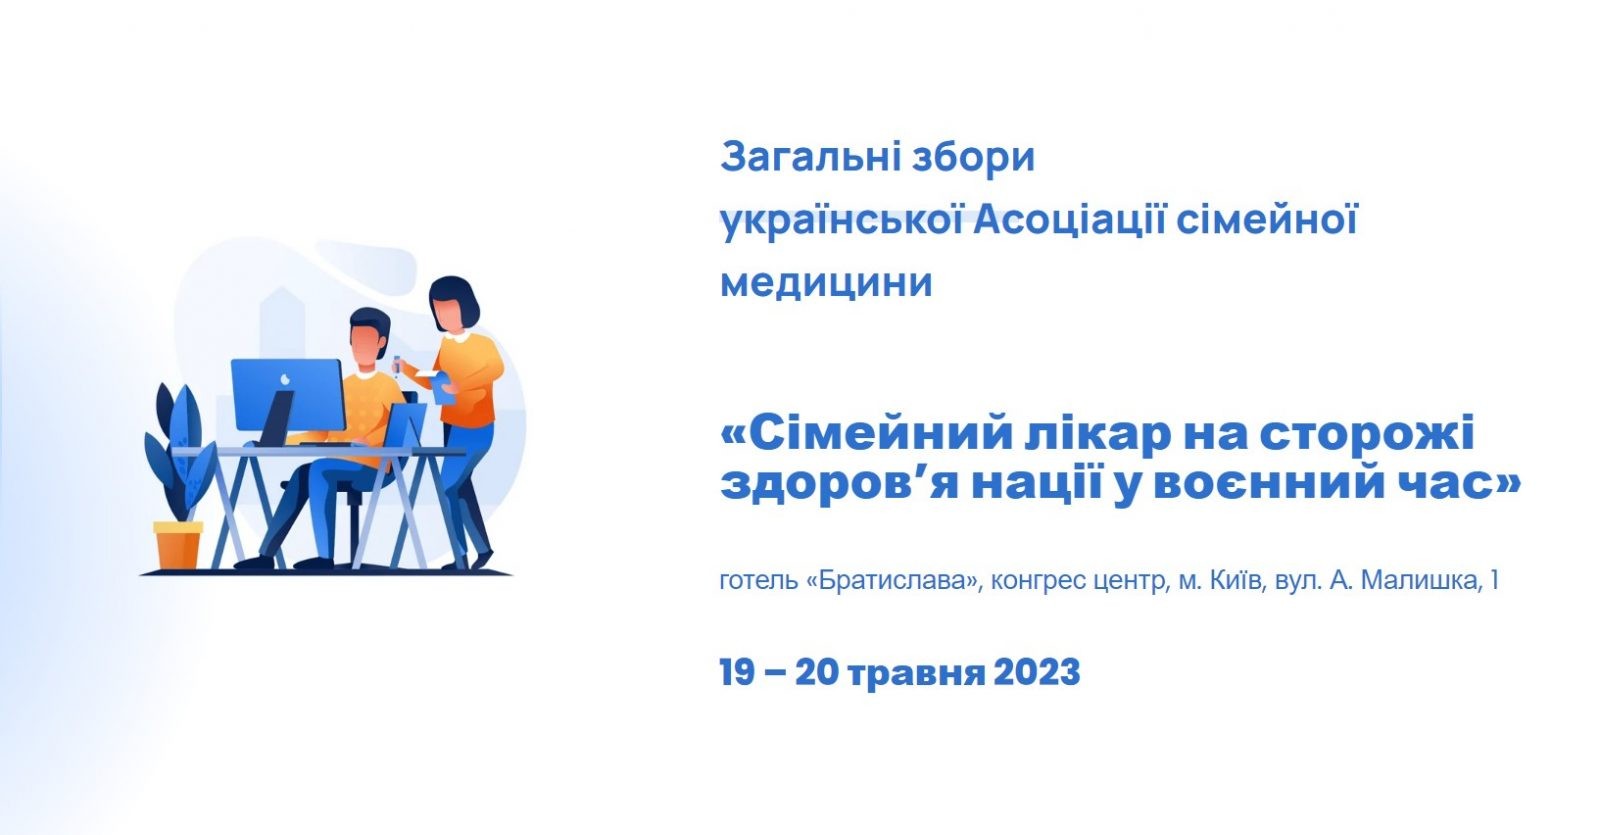 Загальні збори української Асоціації сімейної медицини 2023